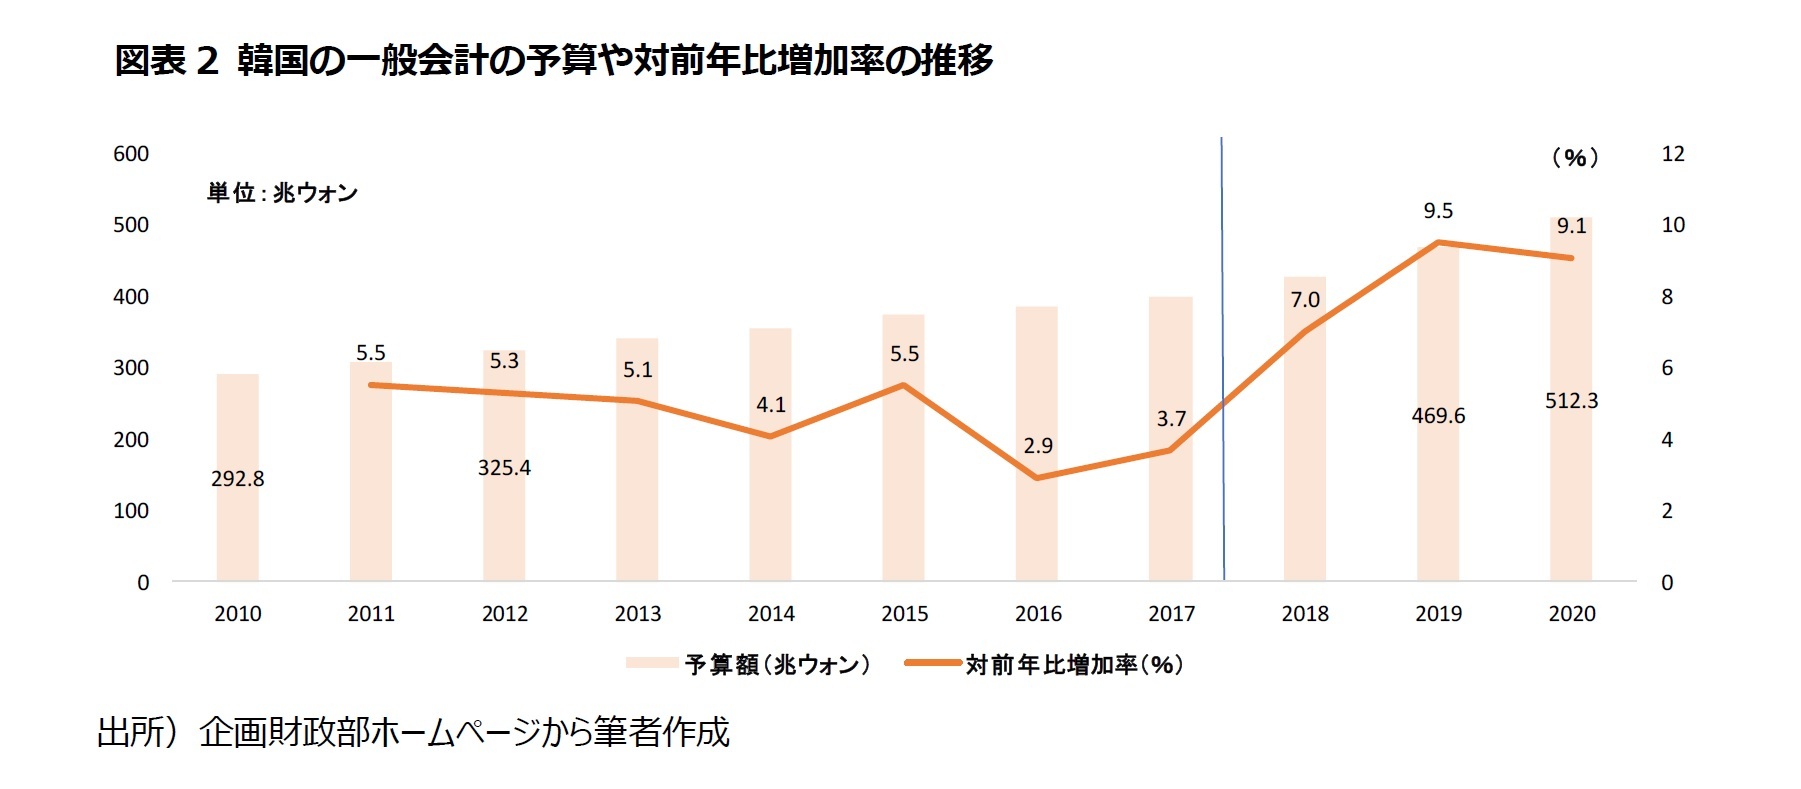 図表2 韓国の一般会計の予算や対前年比増加率の推移